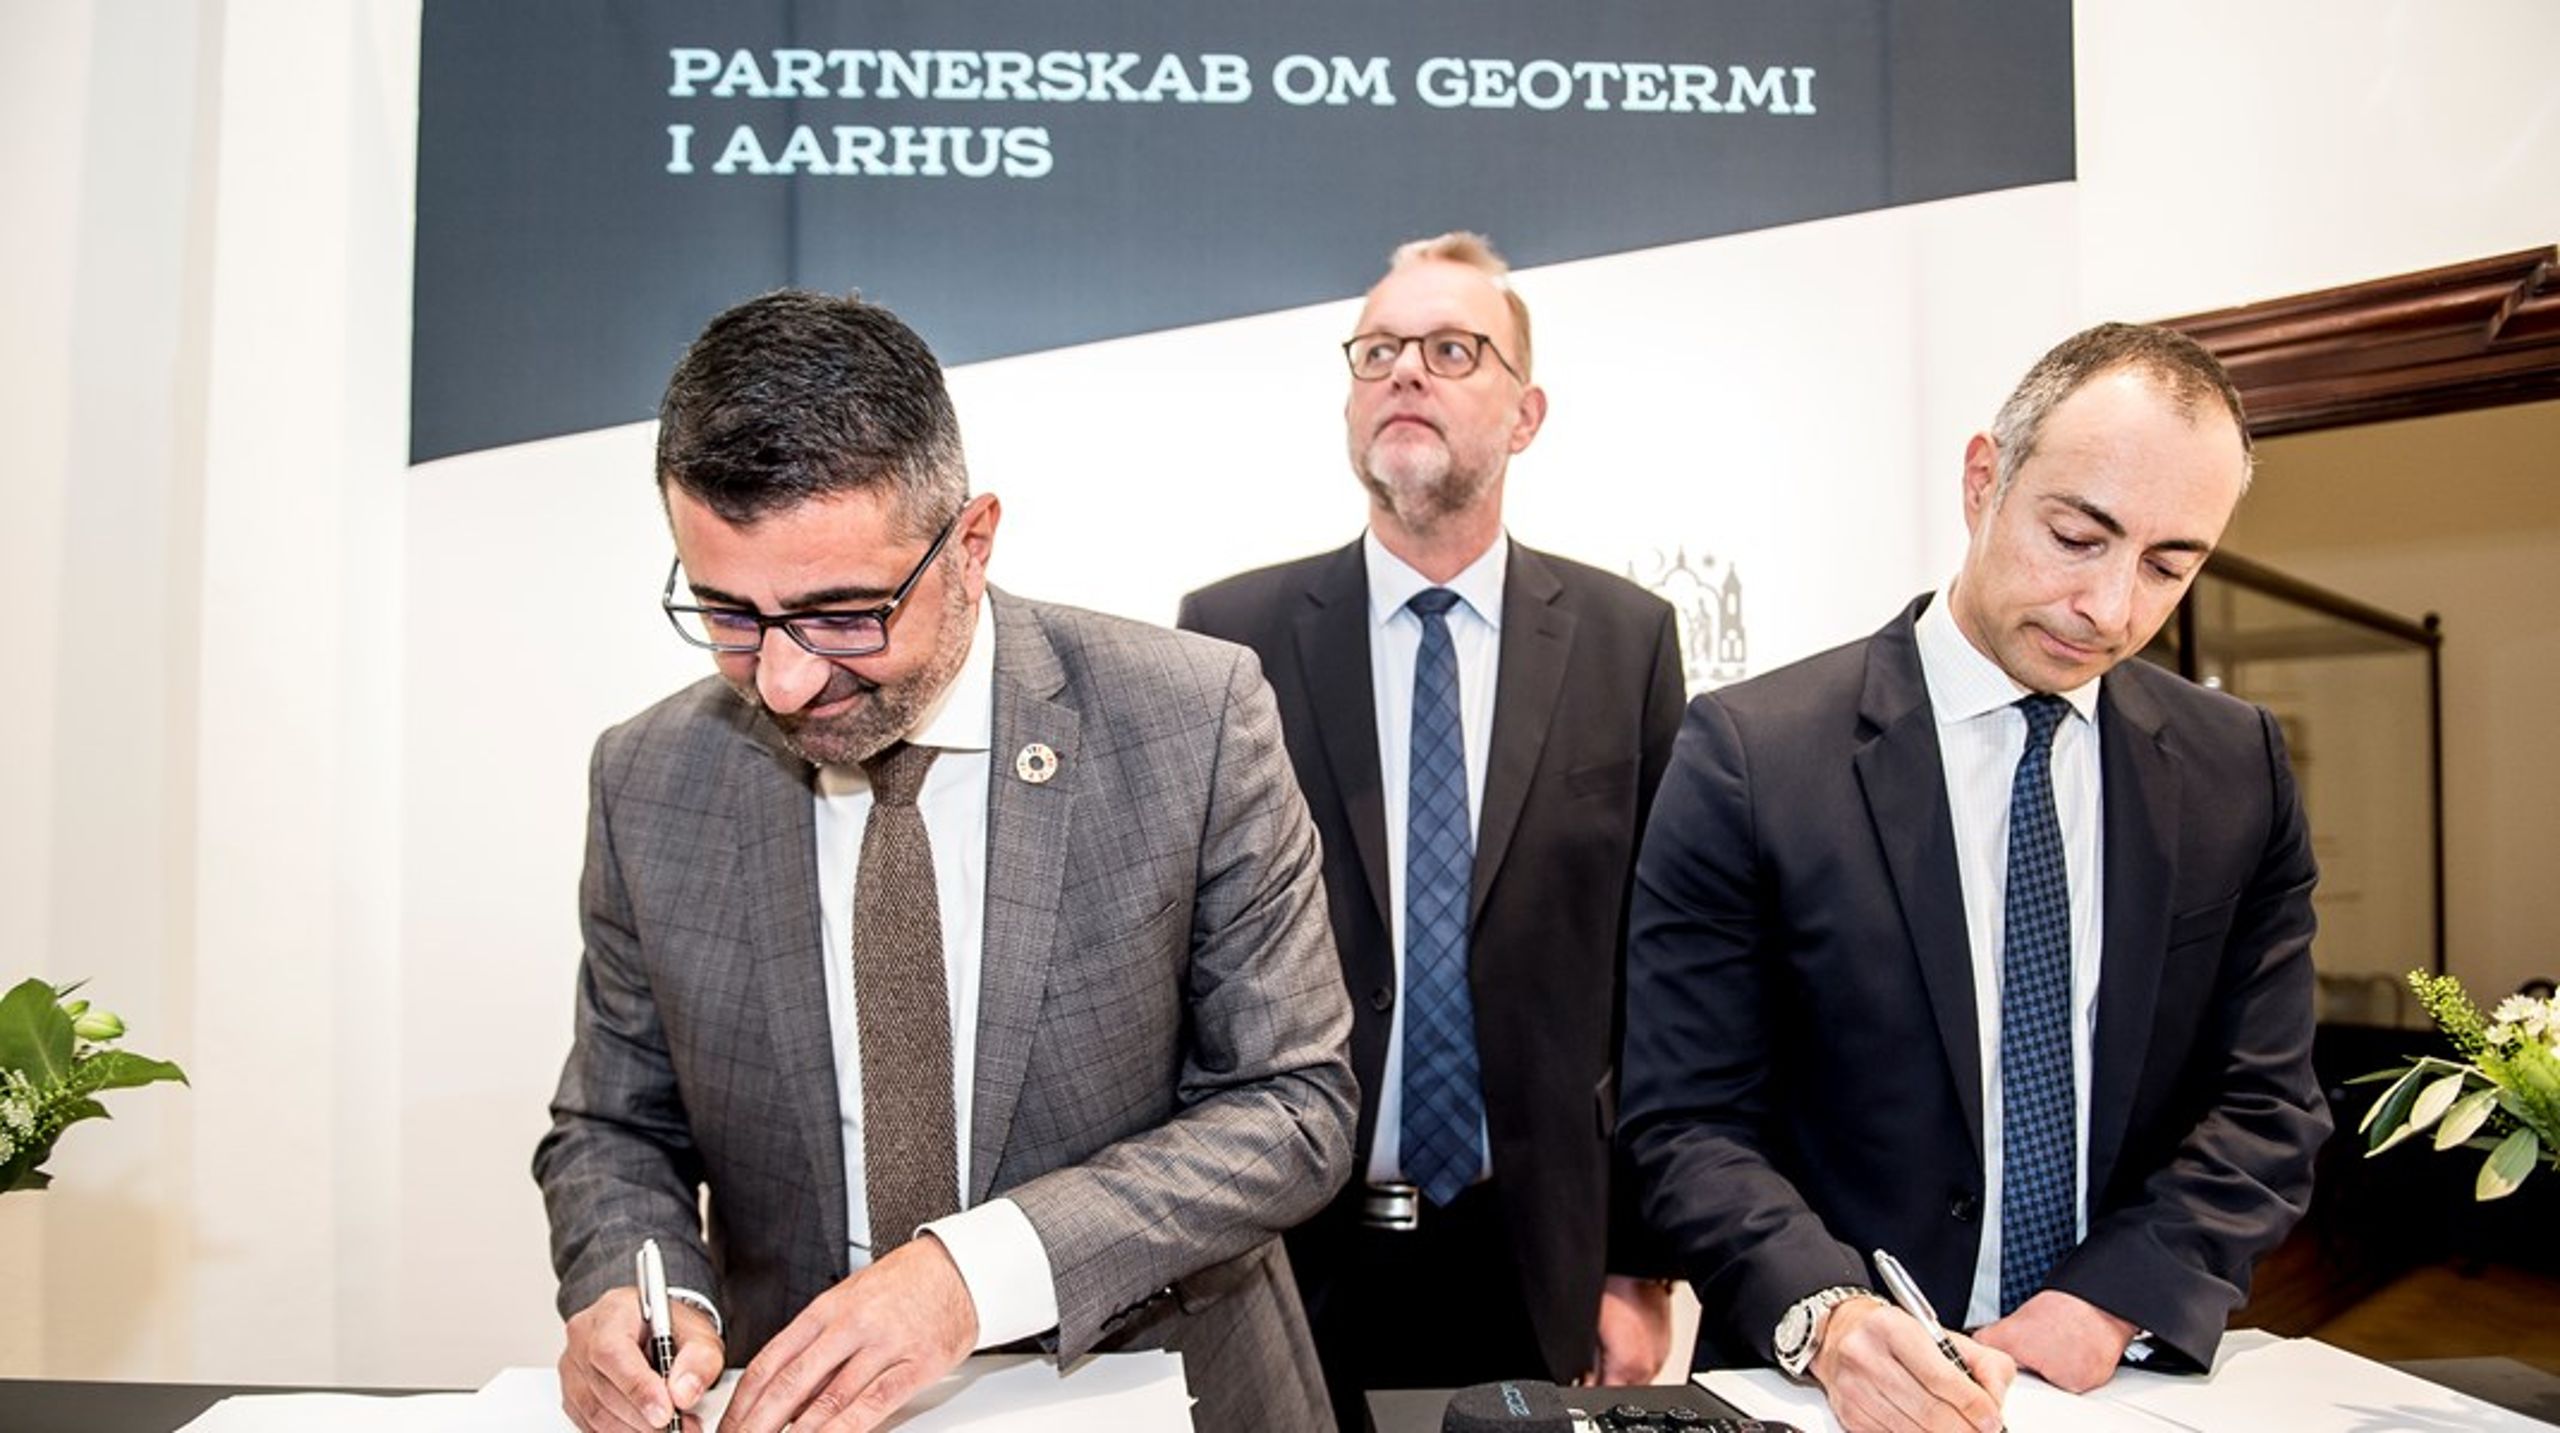 Tirsdag den 23. oktober 2018. A.P. Møller og Aarhus Kommune underskriver et Letter of Intent om et eksklusivt samarbejde om at gøre geotermi til en betydelig del af Aarhus varmeforsyning.<br>